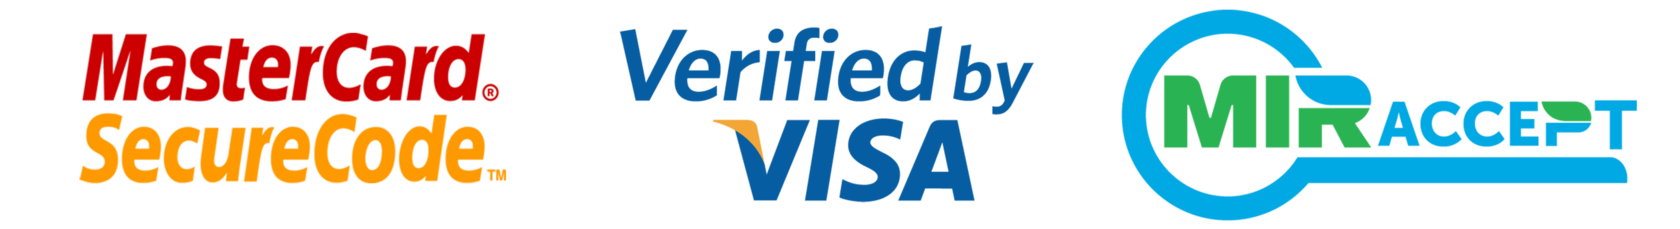 T me vbv bins. Логотип verified by visa. Verified by visa и MASTERCARD SECURECODE. Verified by visa MASTERCARD SECURECODE MIRACCEPT. Логотип MASTERCARD SECURECODE.